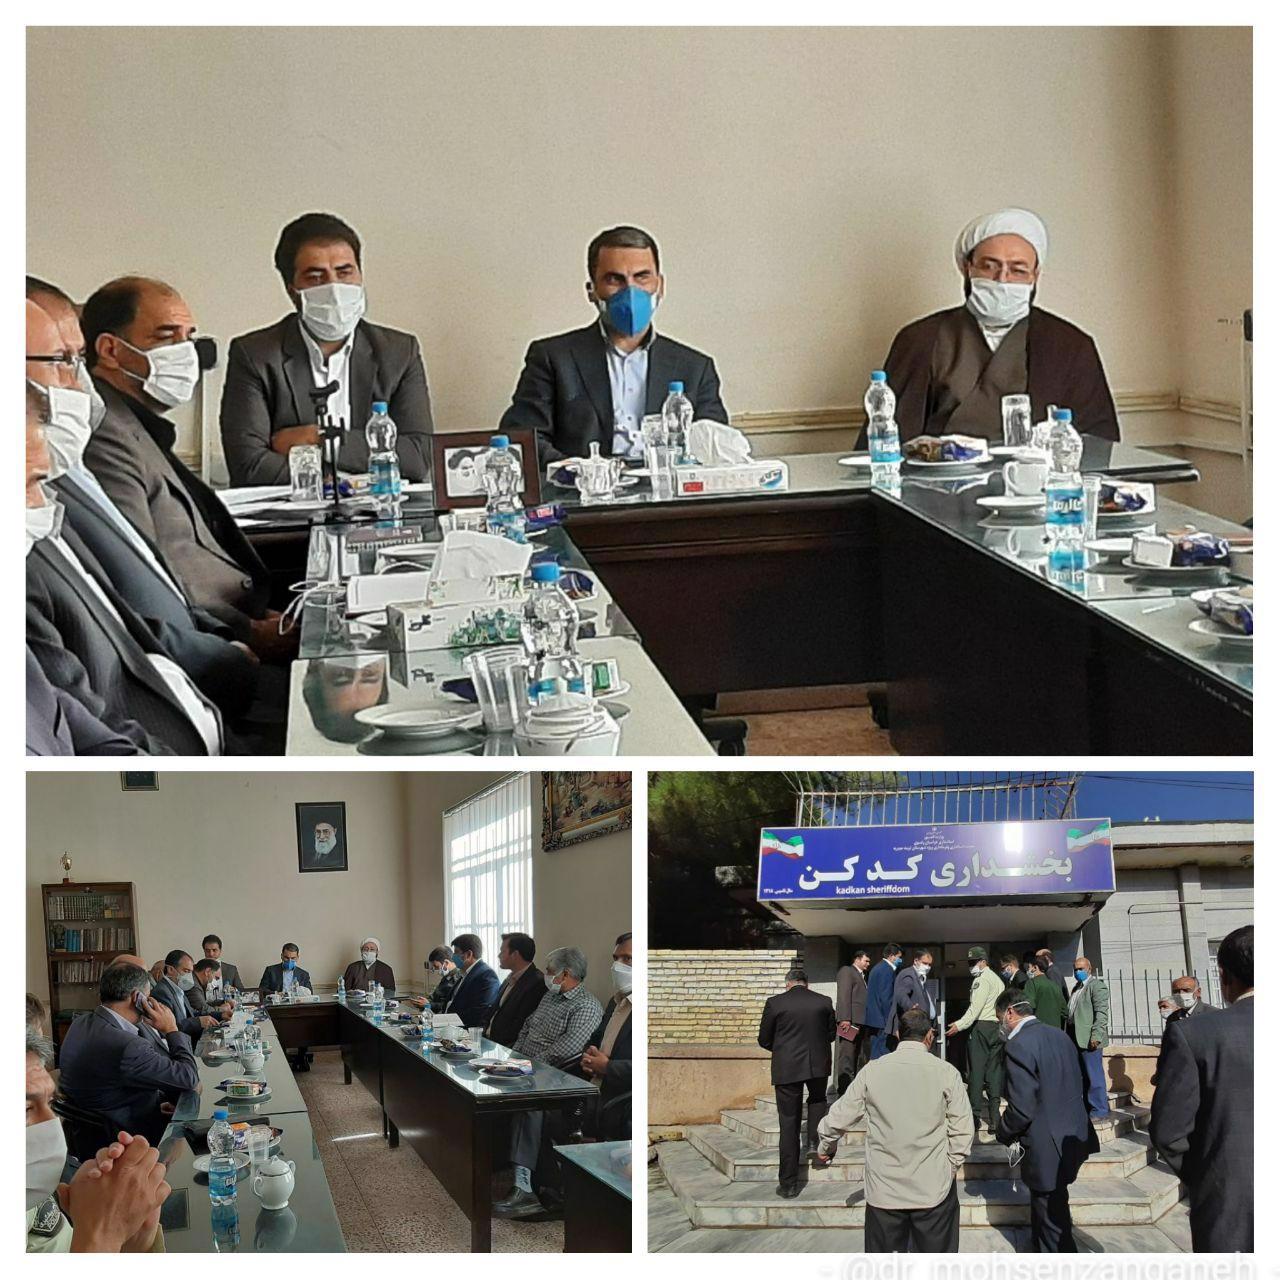 جلسه شورای اداری بخشداری کدکن با شرکت مسئولان | وبسایت دکتر محسن زنگنه